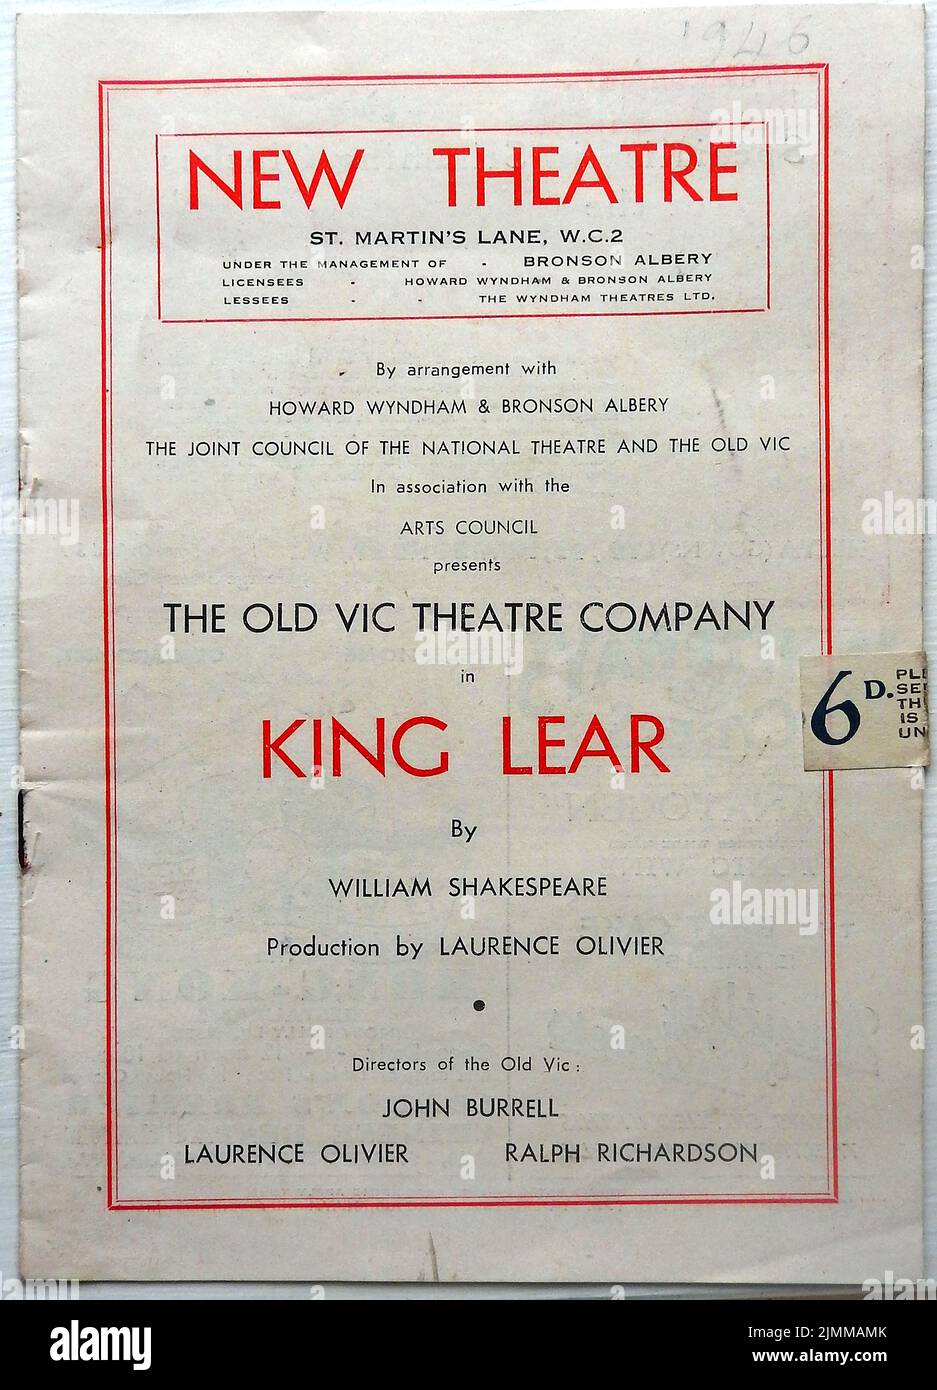 Un programa de teatro de época 1946 - New Theatre, Londres, que presenta una producción de posguerra de la Old Vic Company - King Lear de William Shakespeare. Producción de Laurence Olivier. El costo del programa en ese momento era de 6d (seis pence) Foto de stock